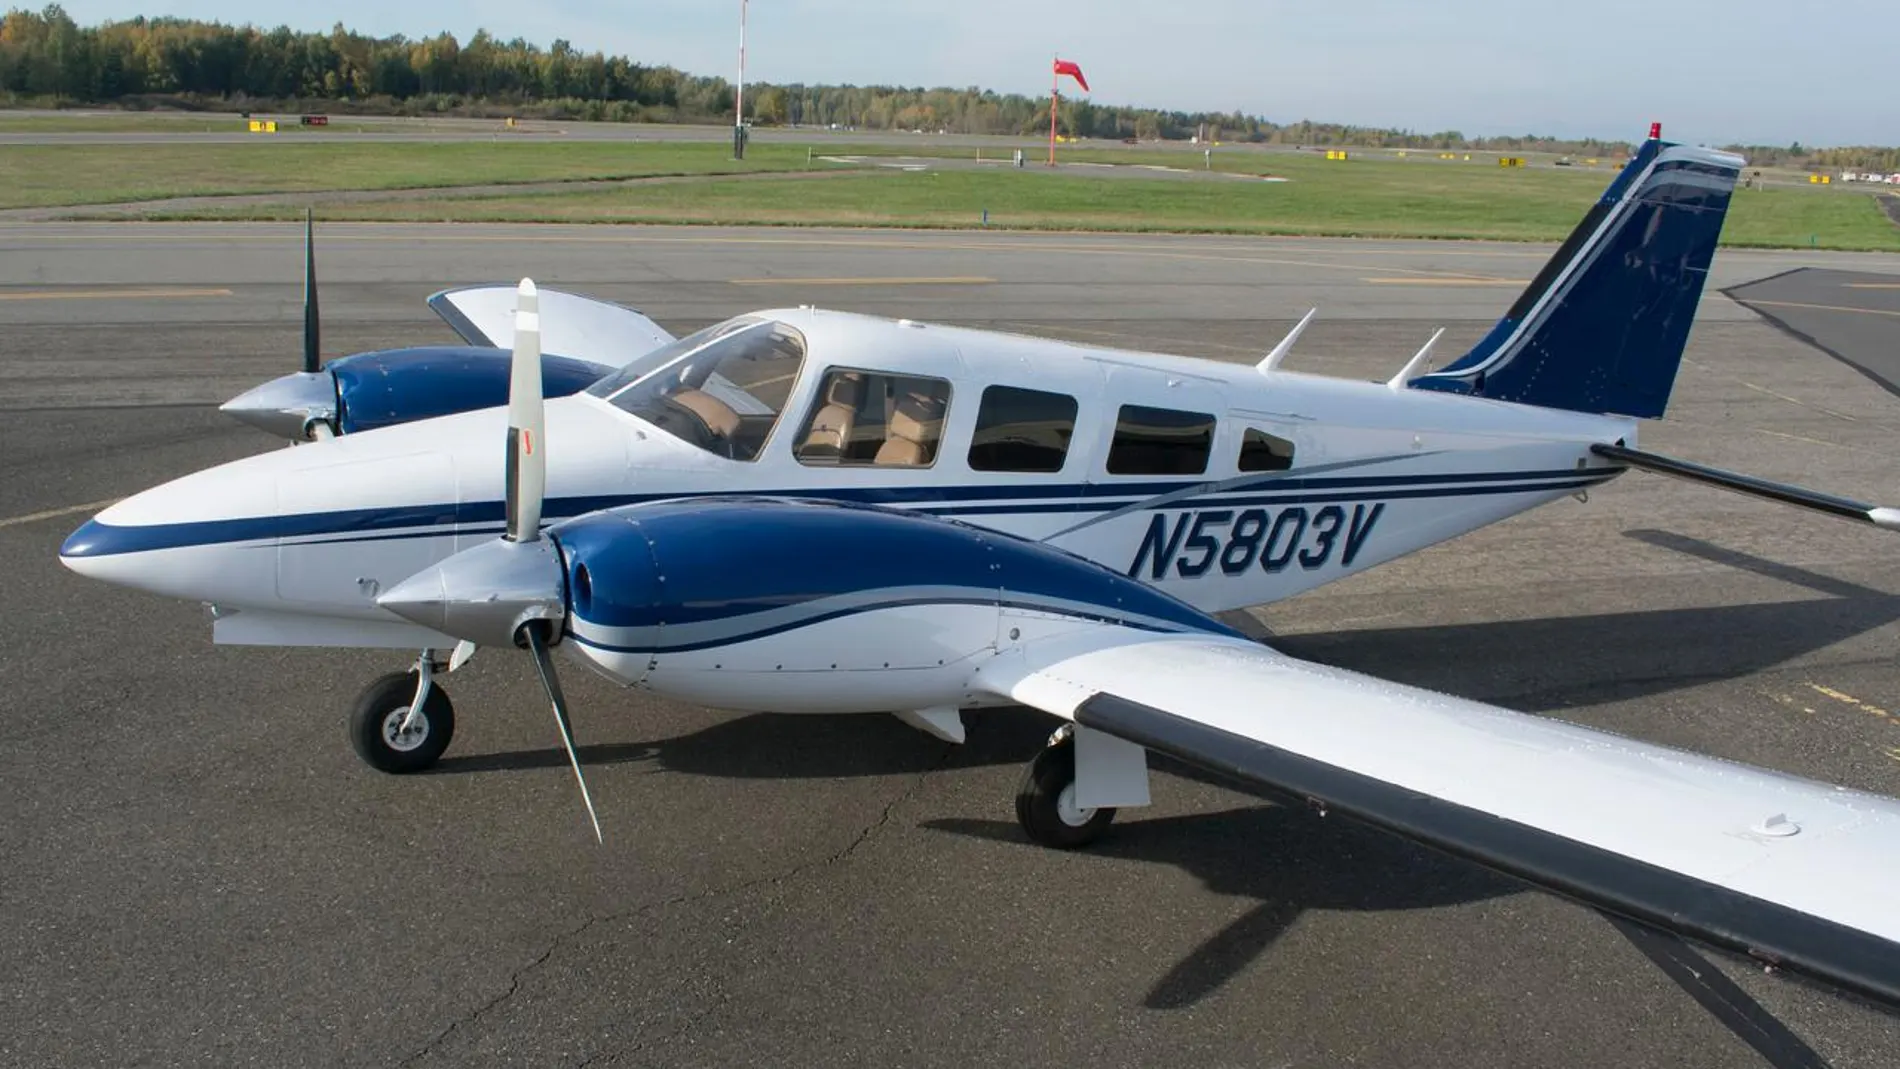 El Piper es el más caro de los aviones que se subastan, pues parte de los 9.000 euros